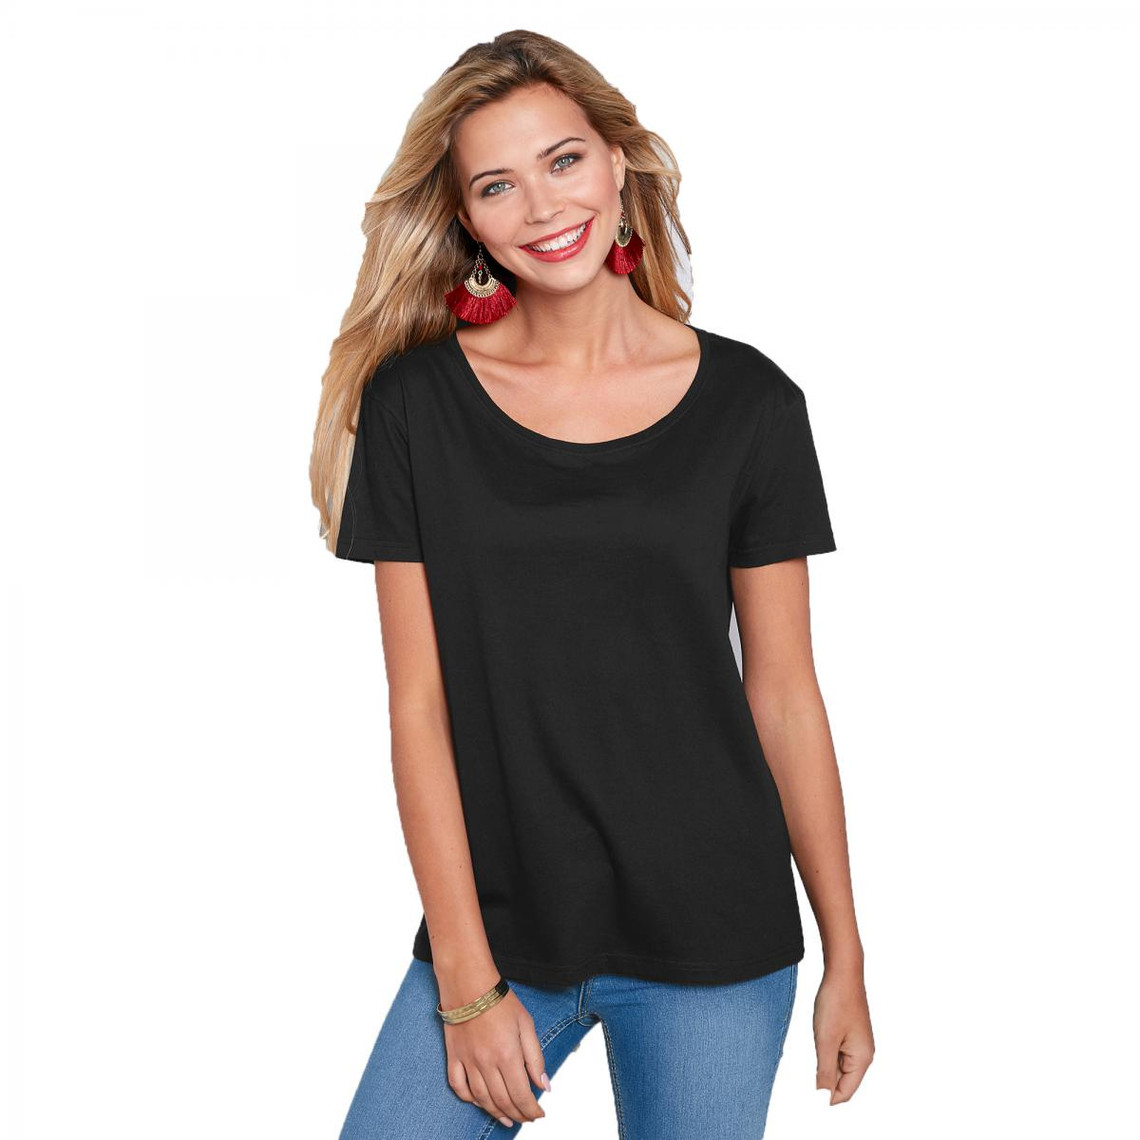 tee-shirt asymétrique fendu manches courtes femme noir en coton